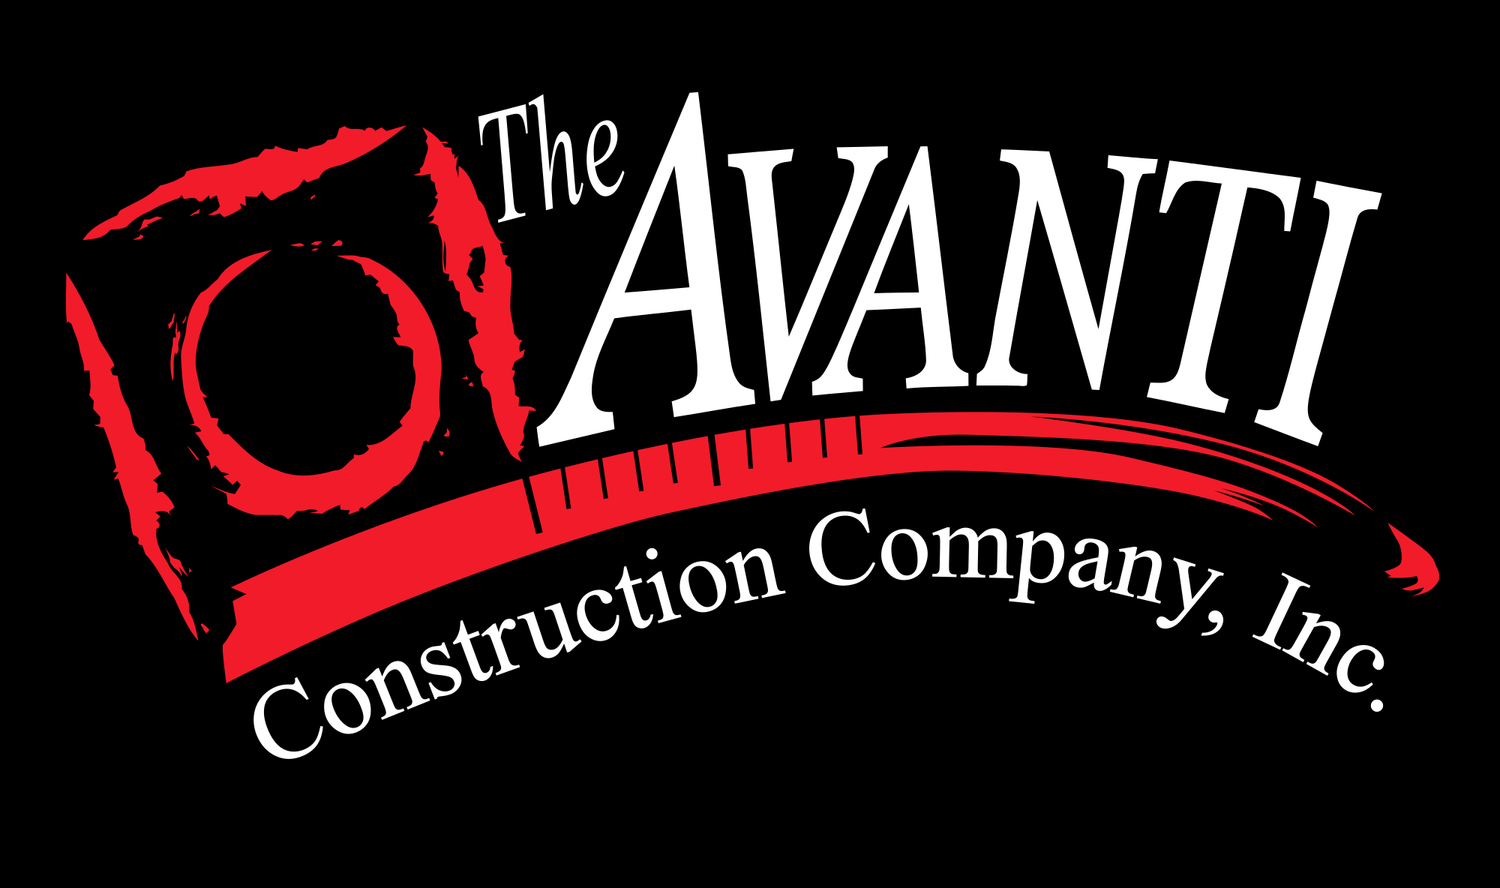 The Avanti Construction Company, Inc.